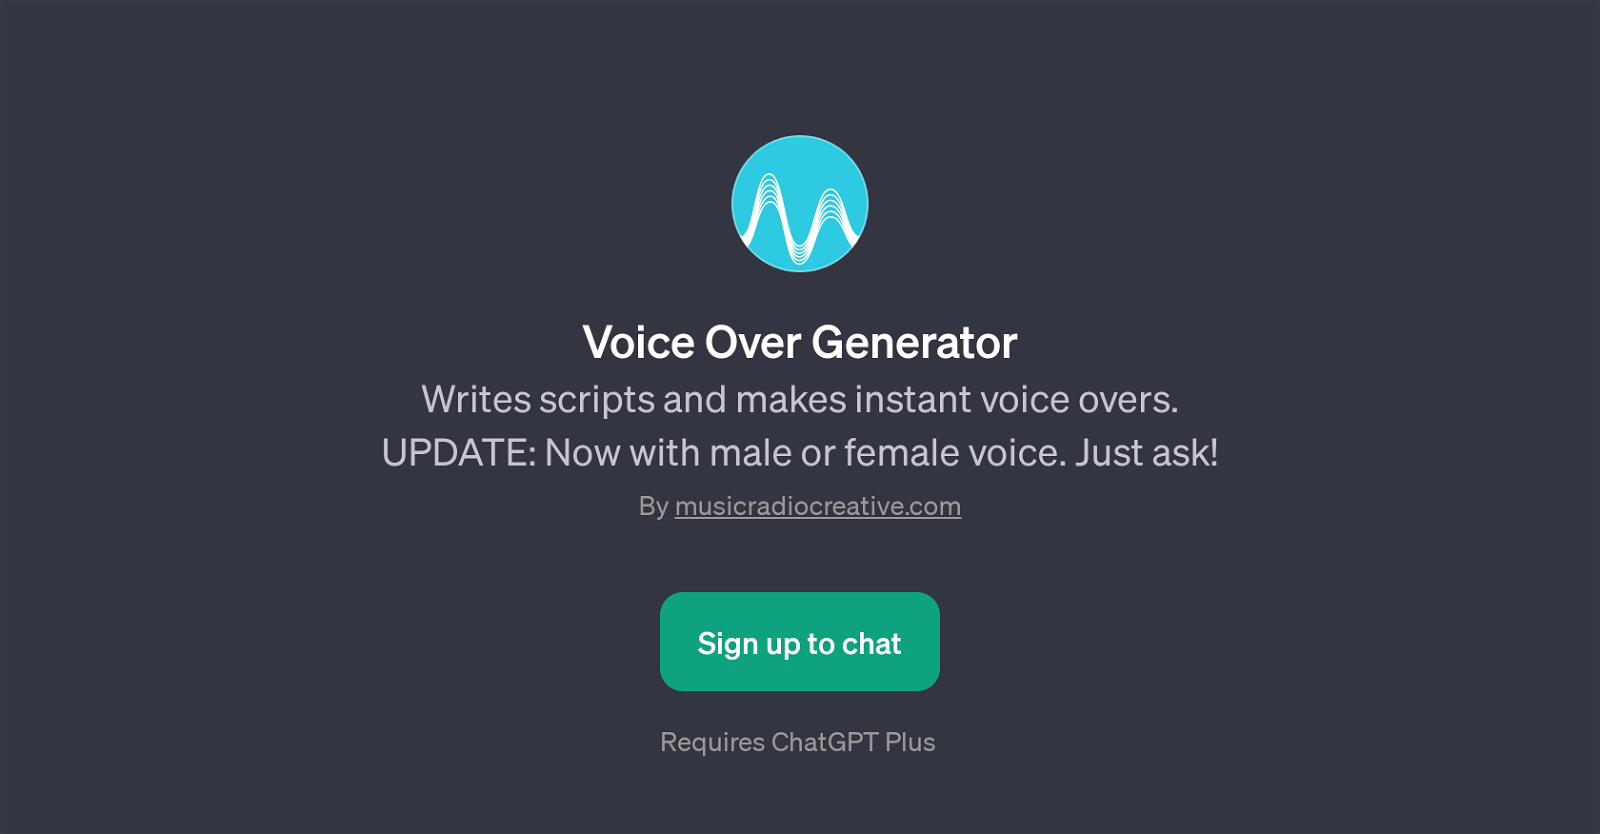 Voice Over Generator website